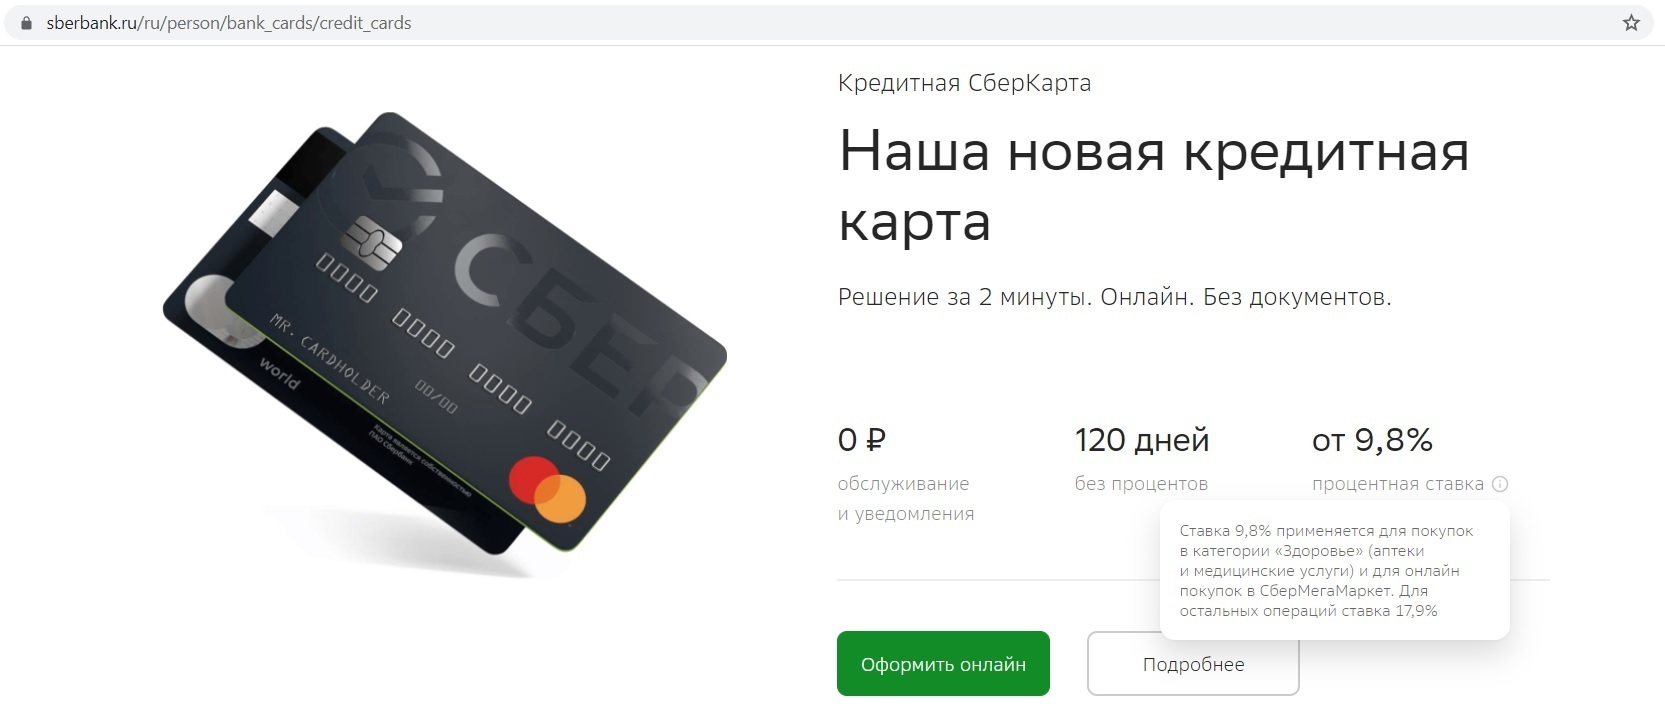 Кредитная карта сбербанка условия отзывы клиентов